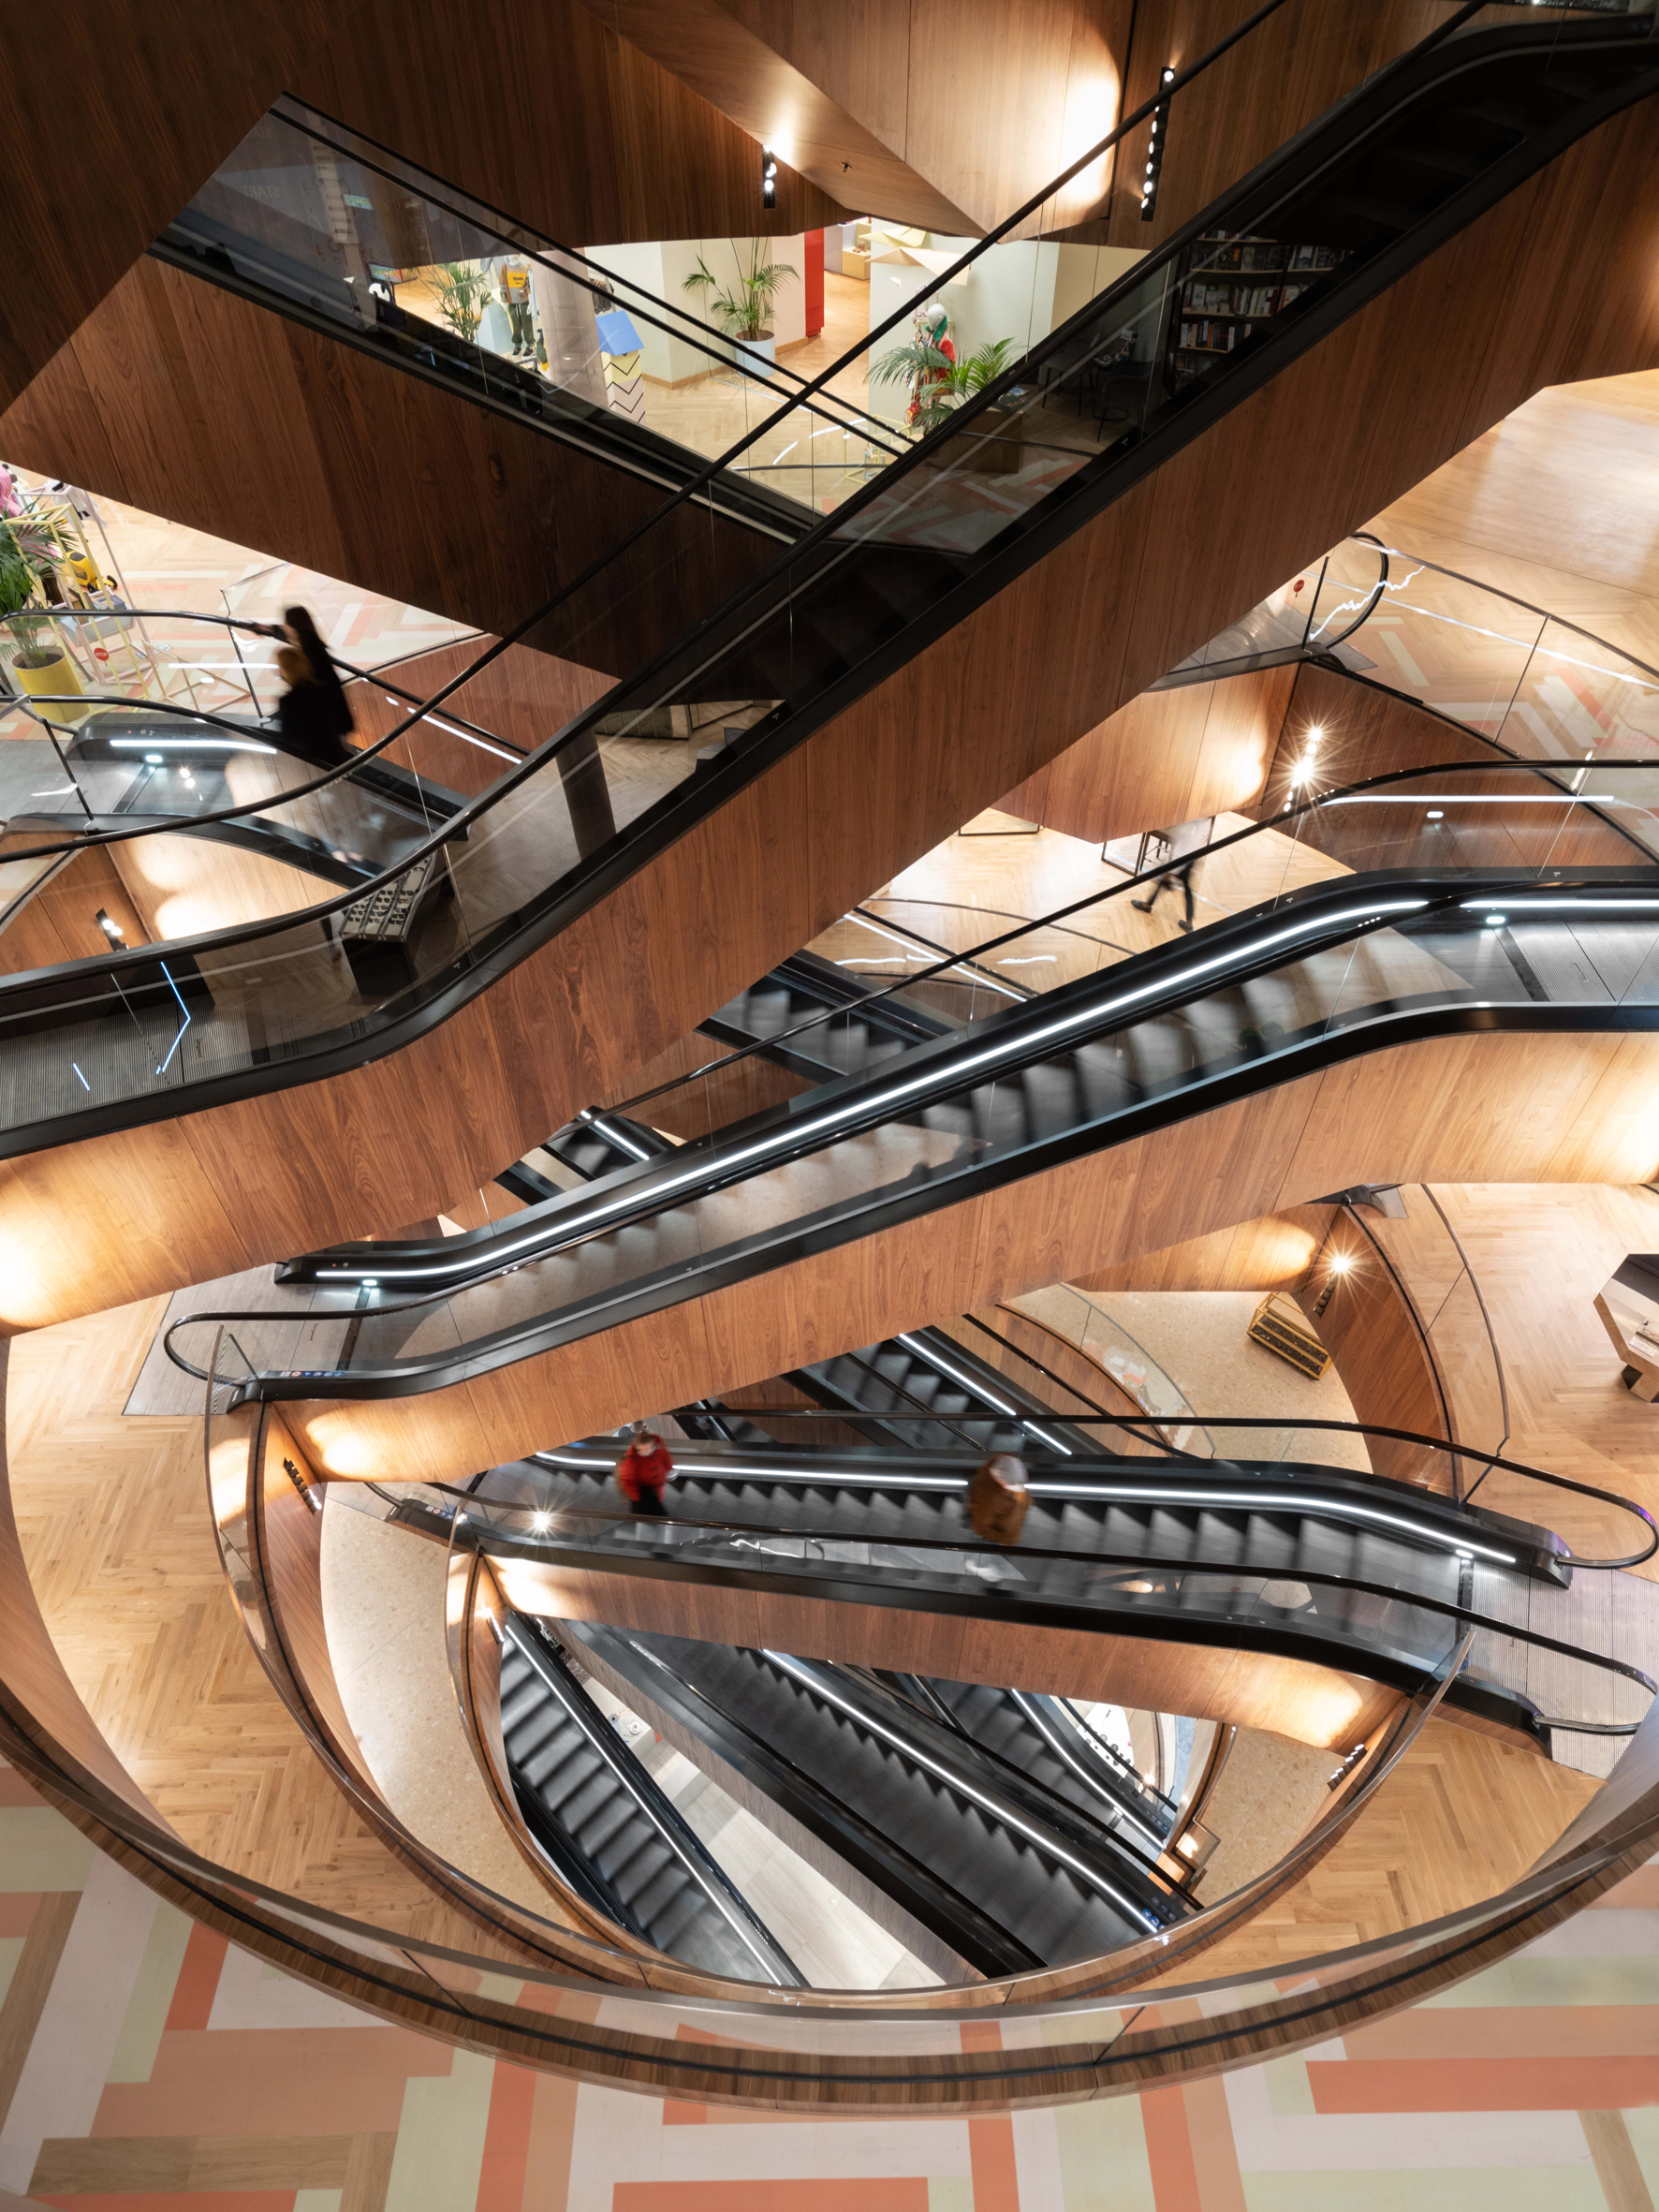 Bild 1: Allein die Rolltreppenanlage besticht schon durch ihre Architektur. Urhebernachweis: Photograph by Marco Cappelletti, Courtesy of OMA